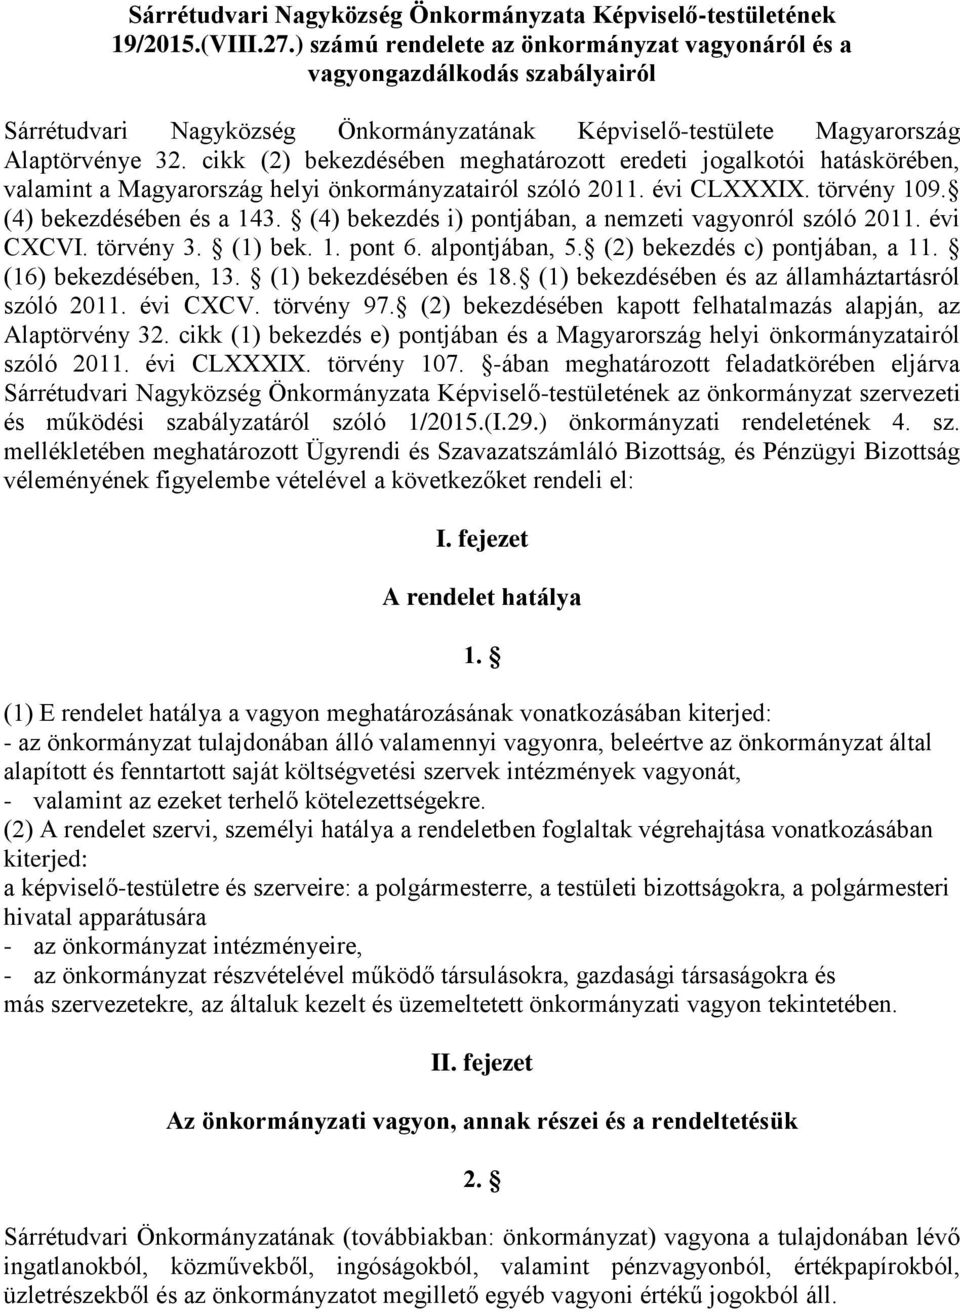 cikk (2) bekezdésében meghatározott eredeti jogalkotói hatáskörében, valamint a Magyarország helyi önkormányzatairól szóló 2011. évi CLXXXIX. törvény 109. (4) bekezdésében és a 143.